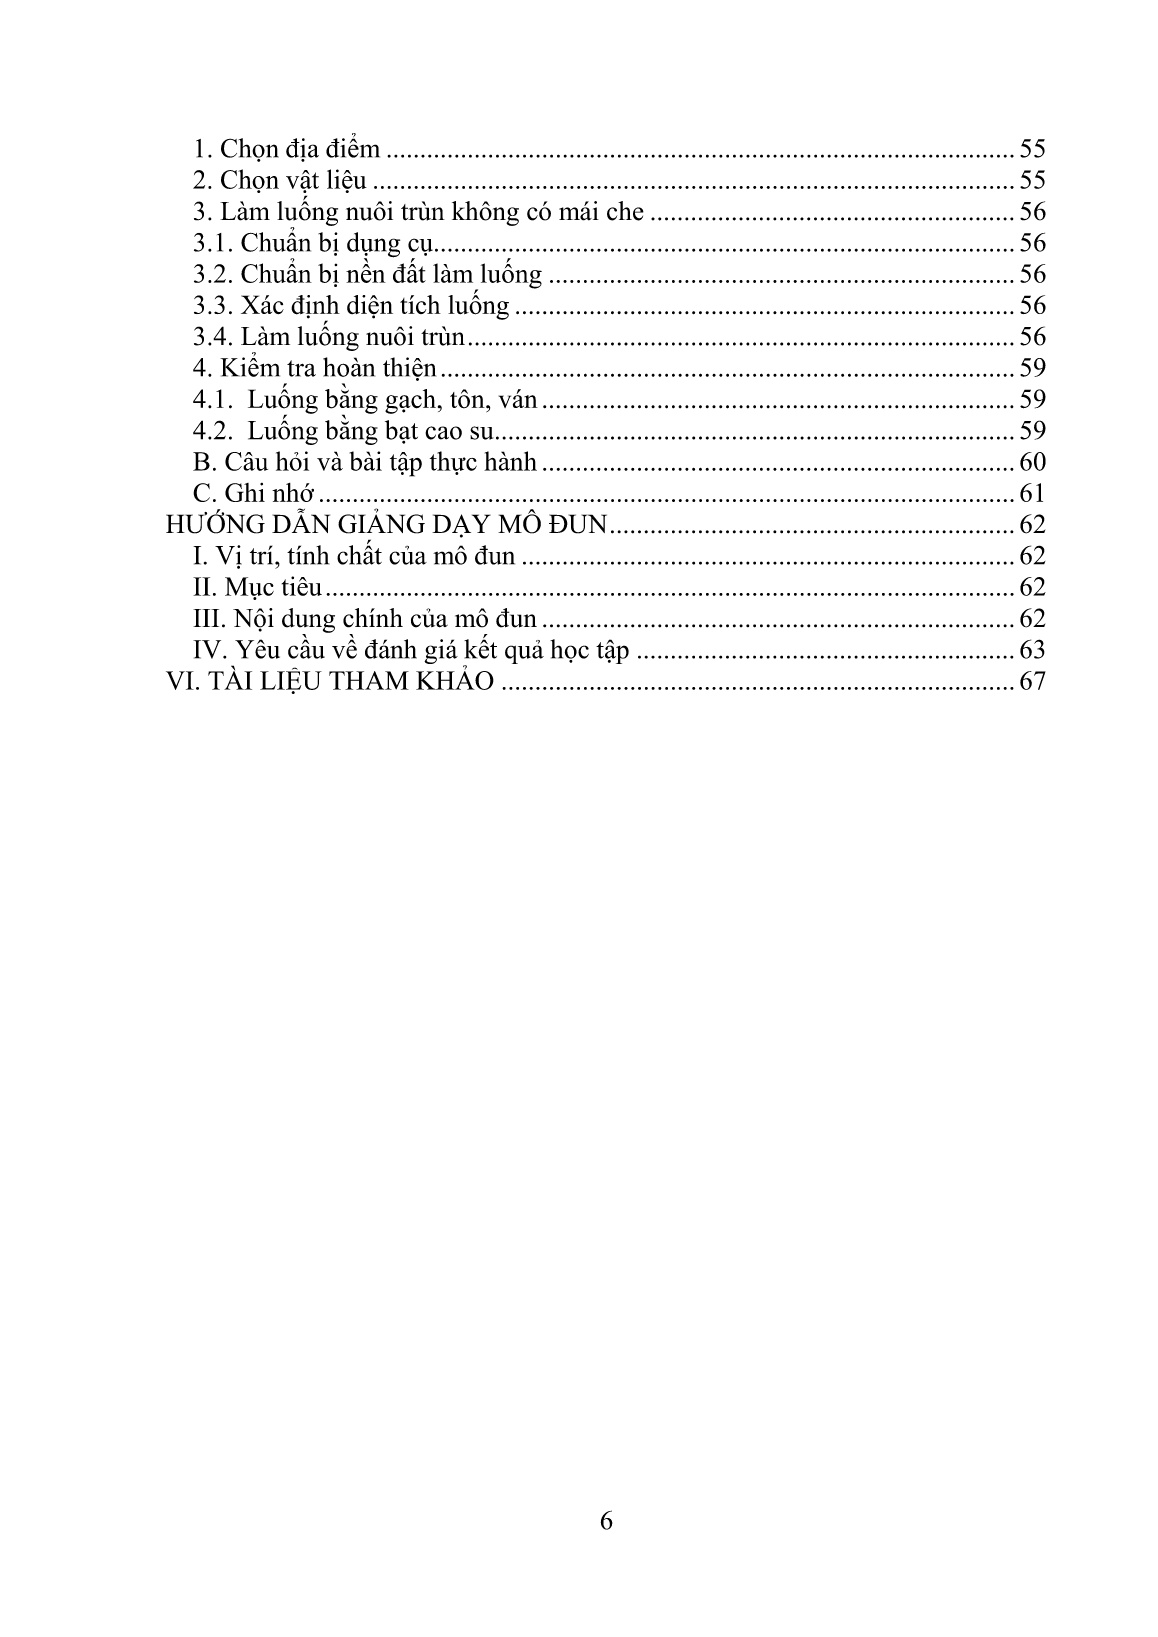 Giáo trình mô đun Lựa chọn và xây dựng chuồng nuôi trùn (Trình độ: Sơ cấp nghề) trang 8